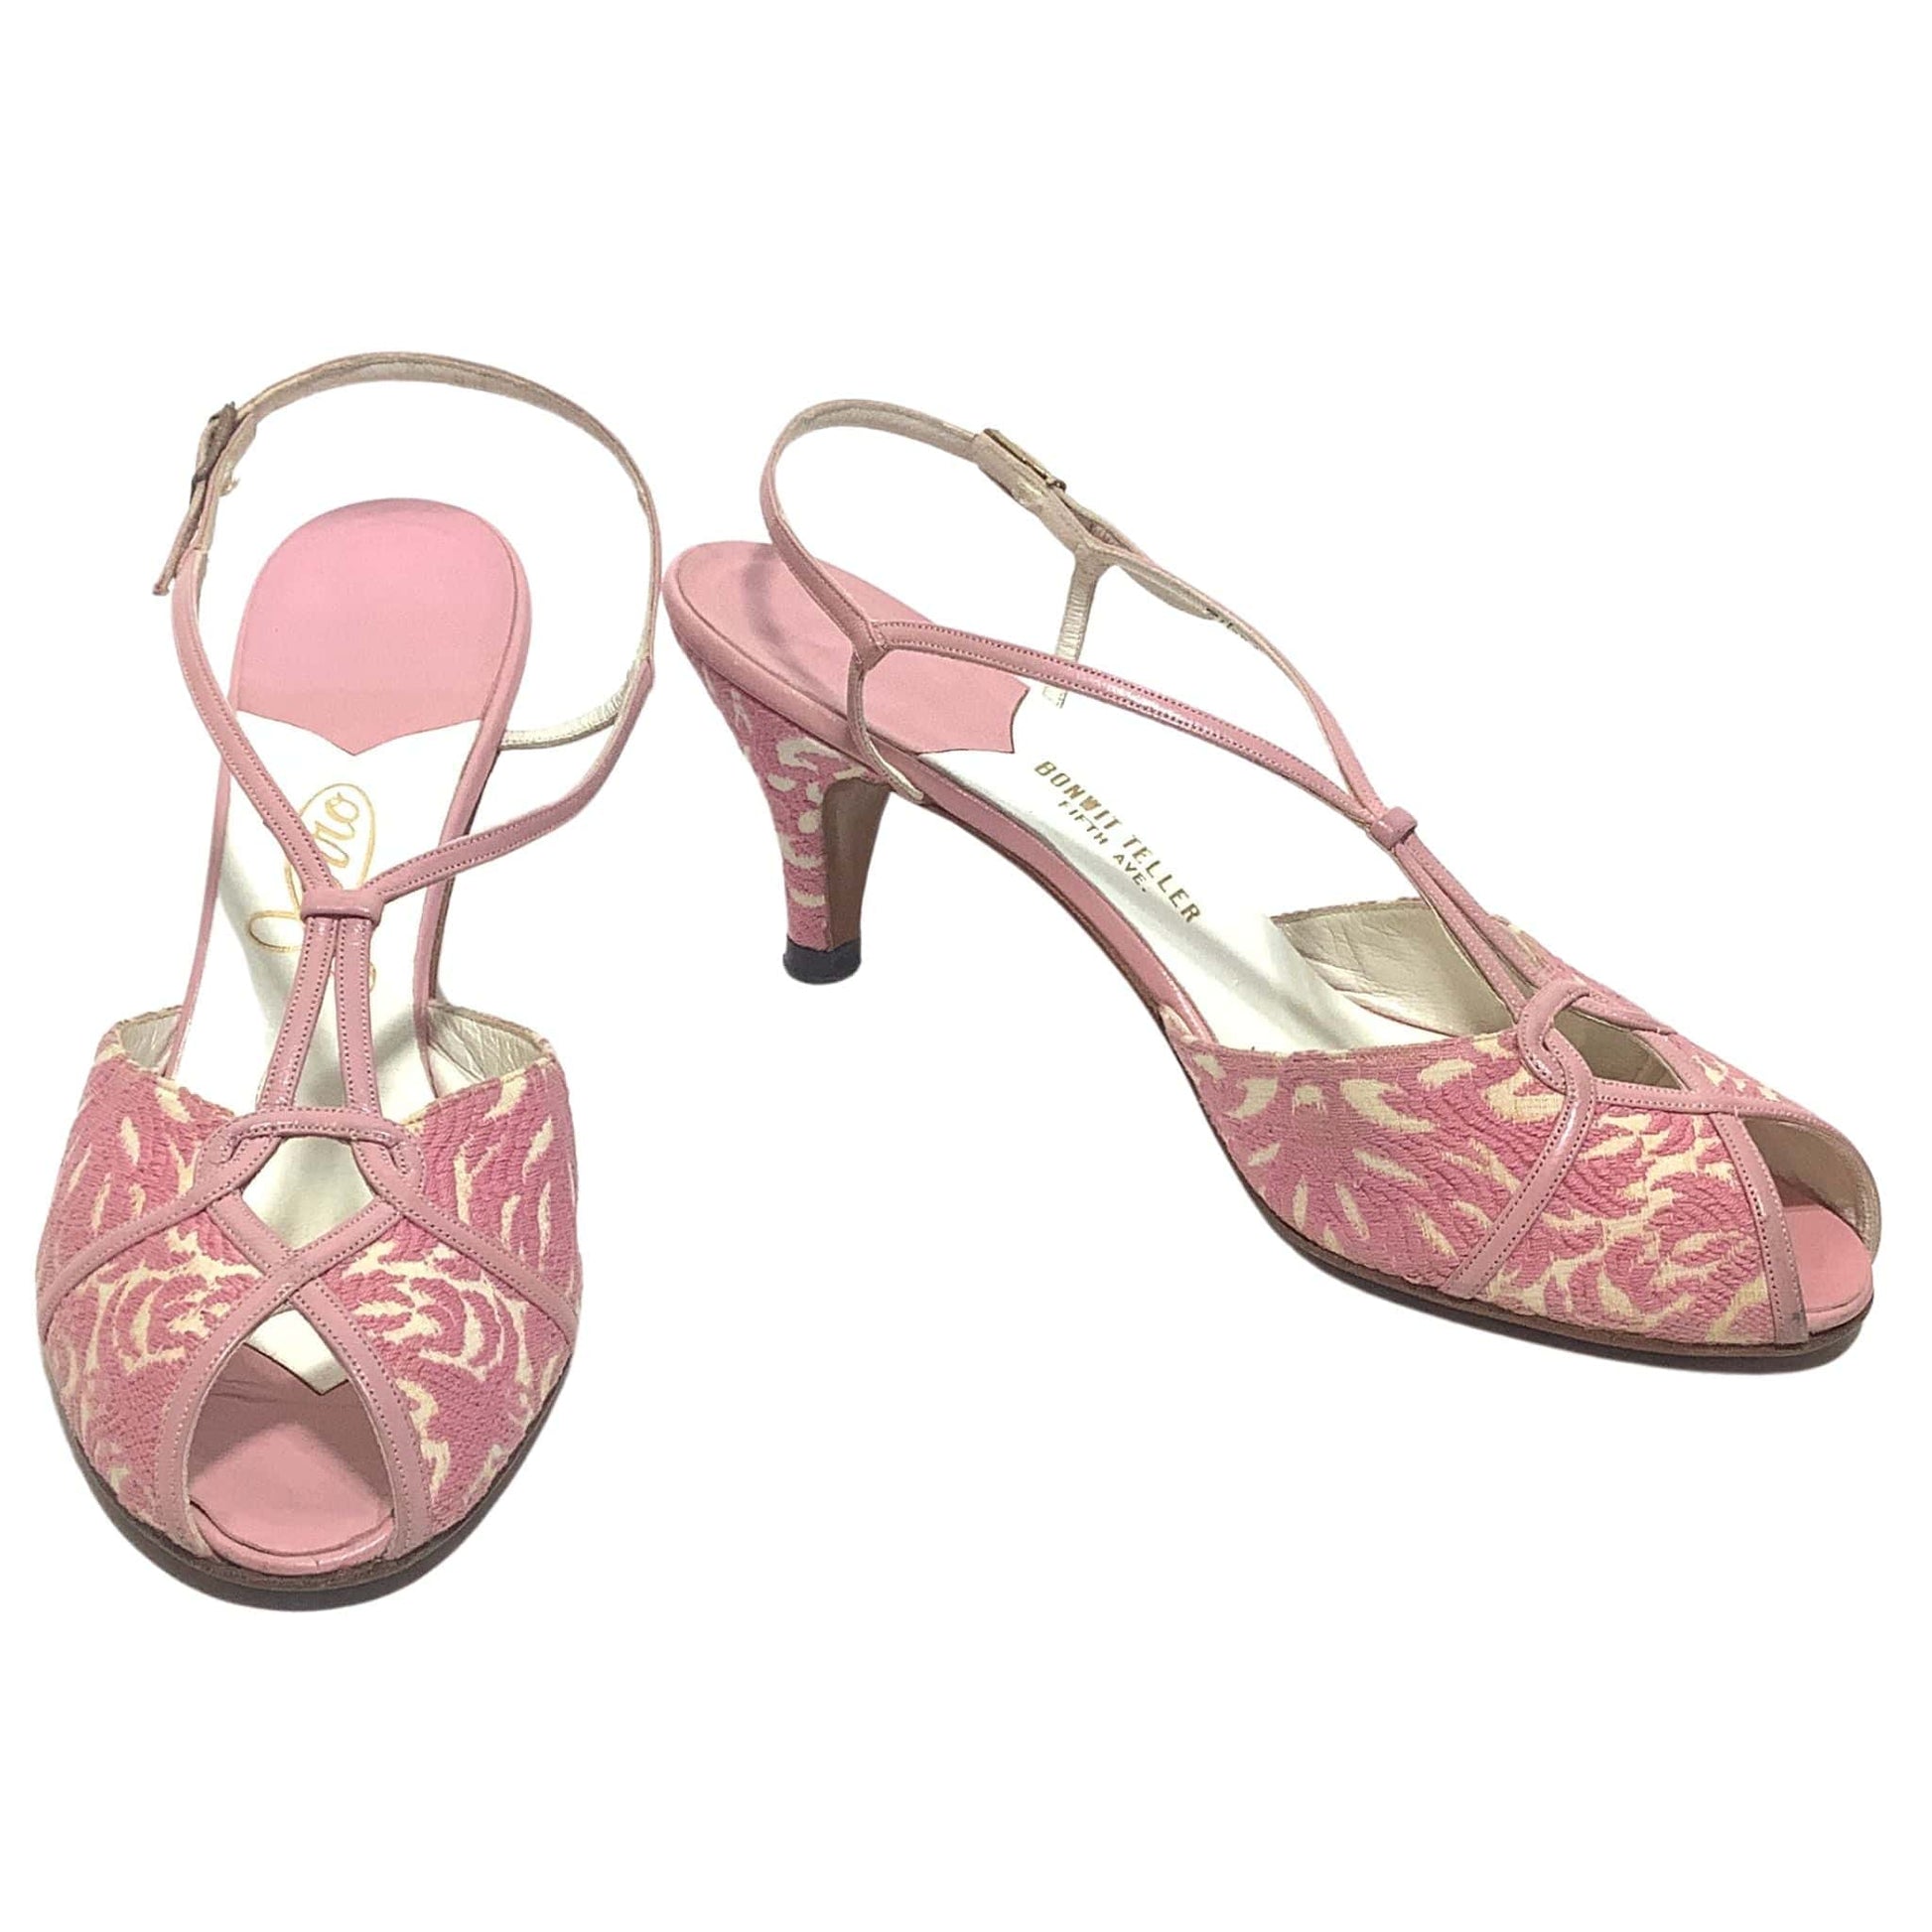 Bonwit Teller Pink Heels 7.5 / Multi / Vintage 1960s